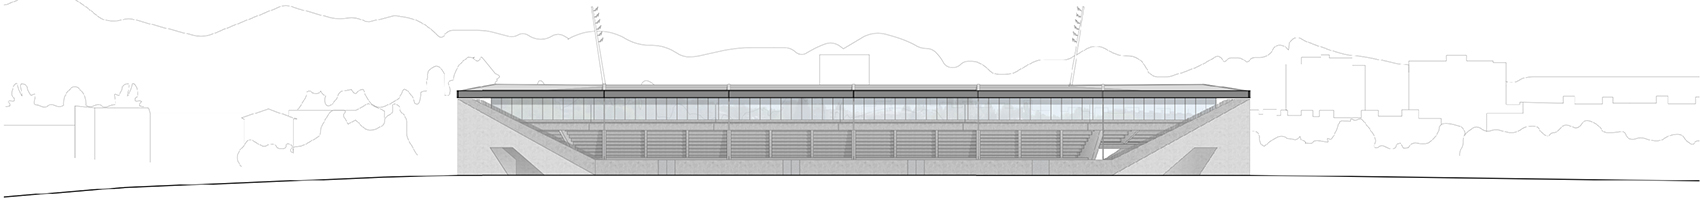 洛桑市新足球场馆，瑞士/散发宁静感的市郊体育设施-97